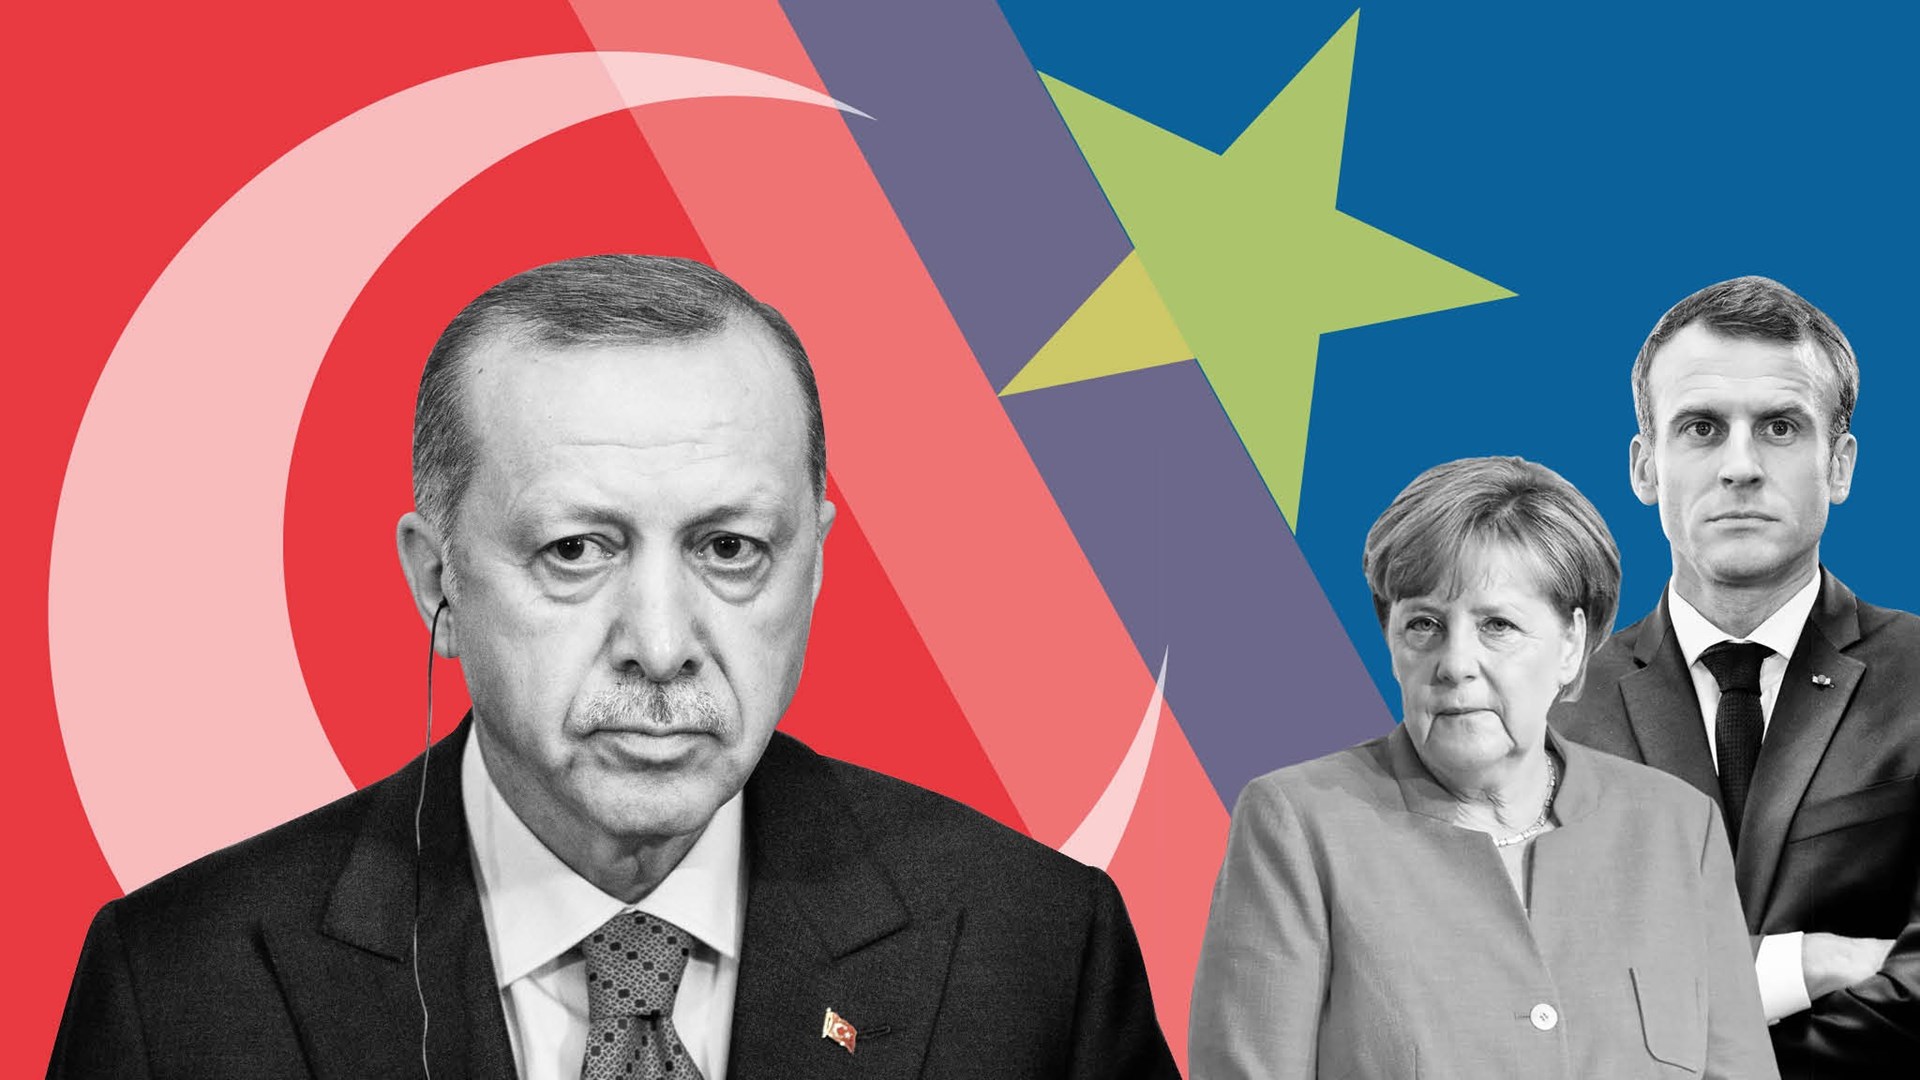 Έκθεση Μπορέλ: Μια λυπηρή παράλειψη για την Τουρκία και το μάθημα του Έβρου